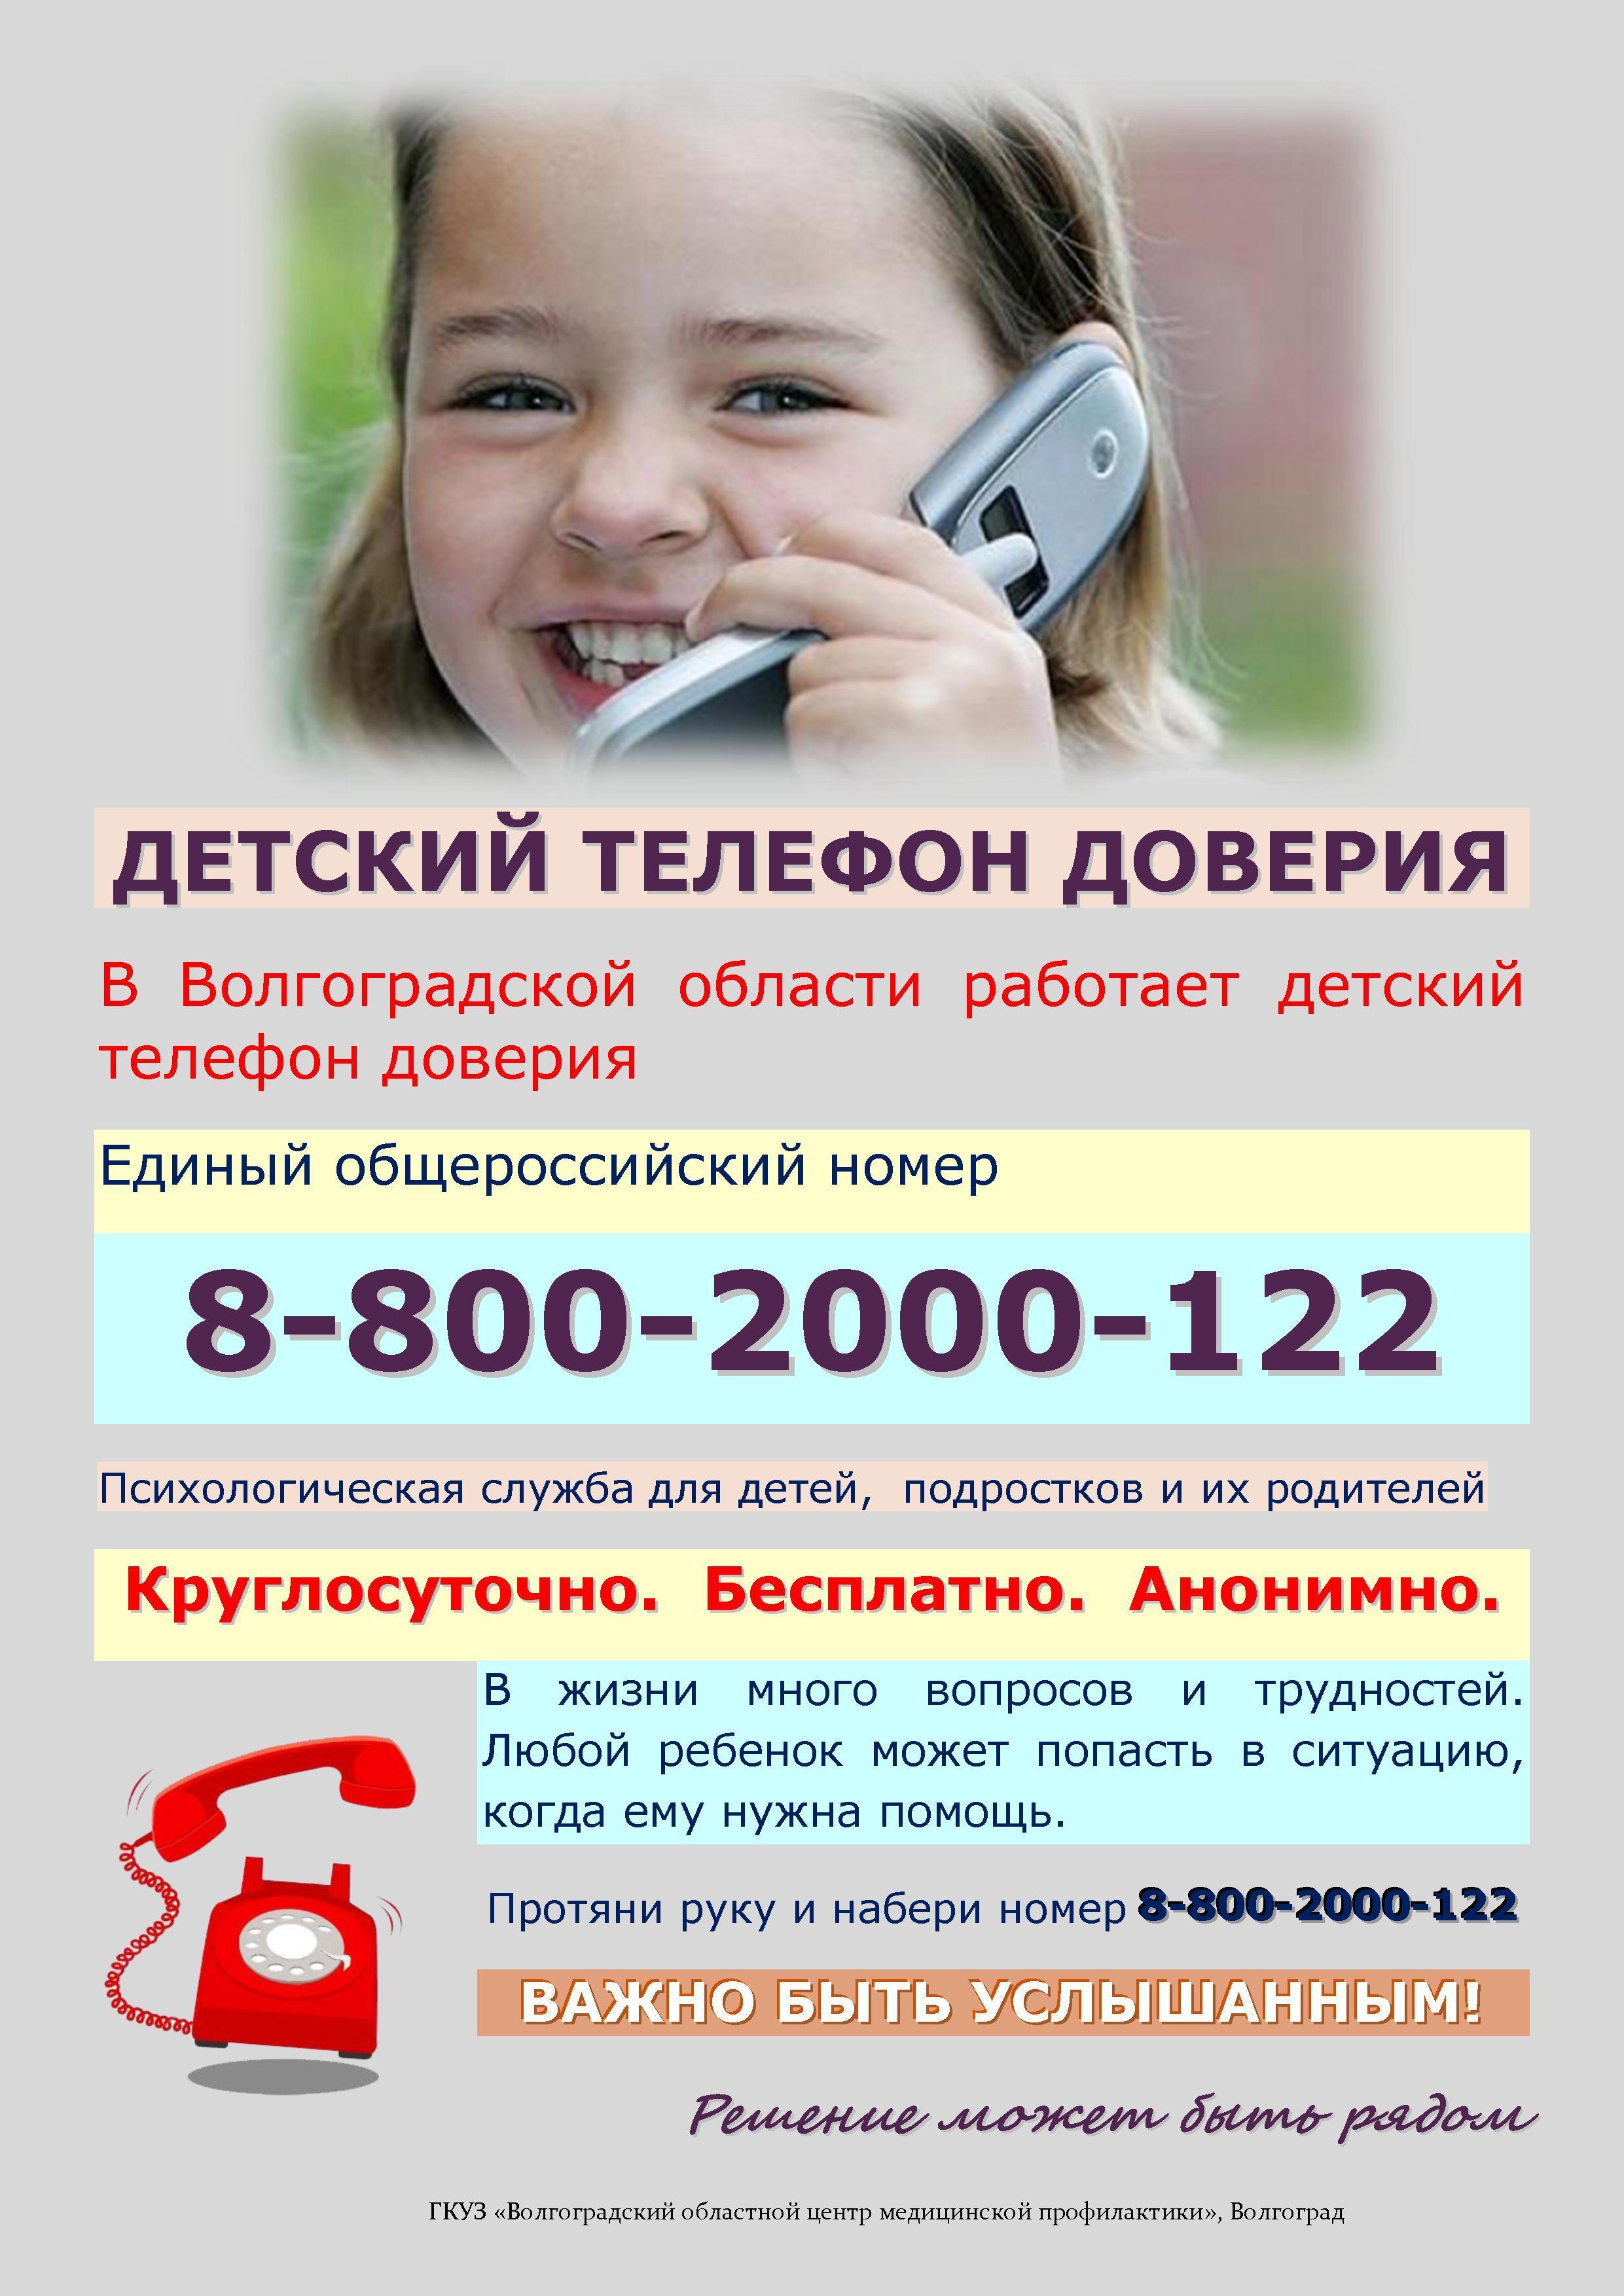 Телефон доверия министерства. Телефон доверия. Детский телефон доверия. Телефон доверия для детей подростков и их родителей. Номер телефона доверия для детей.